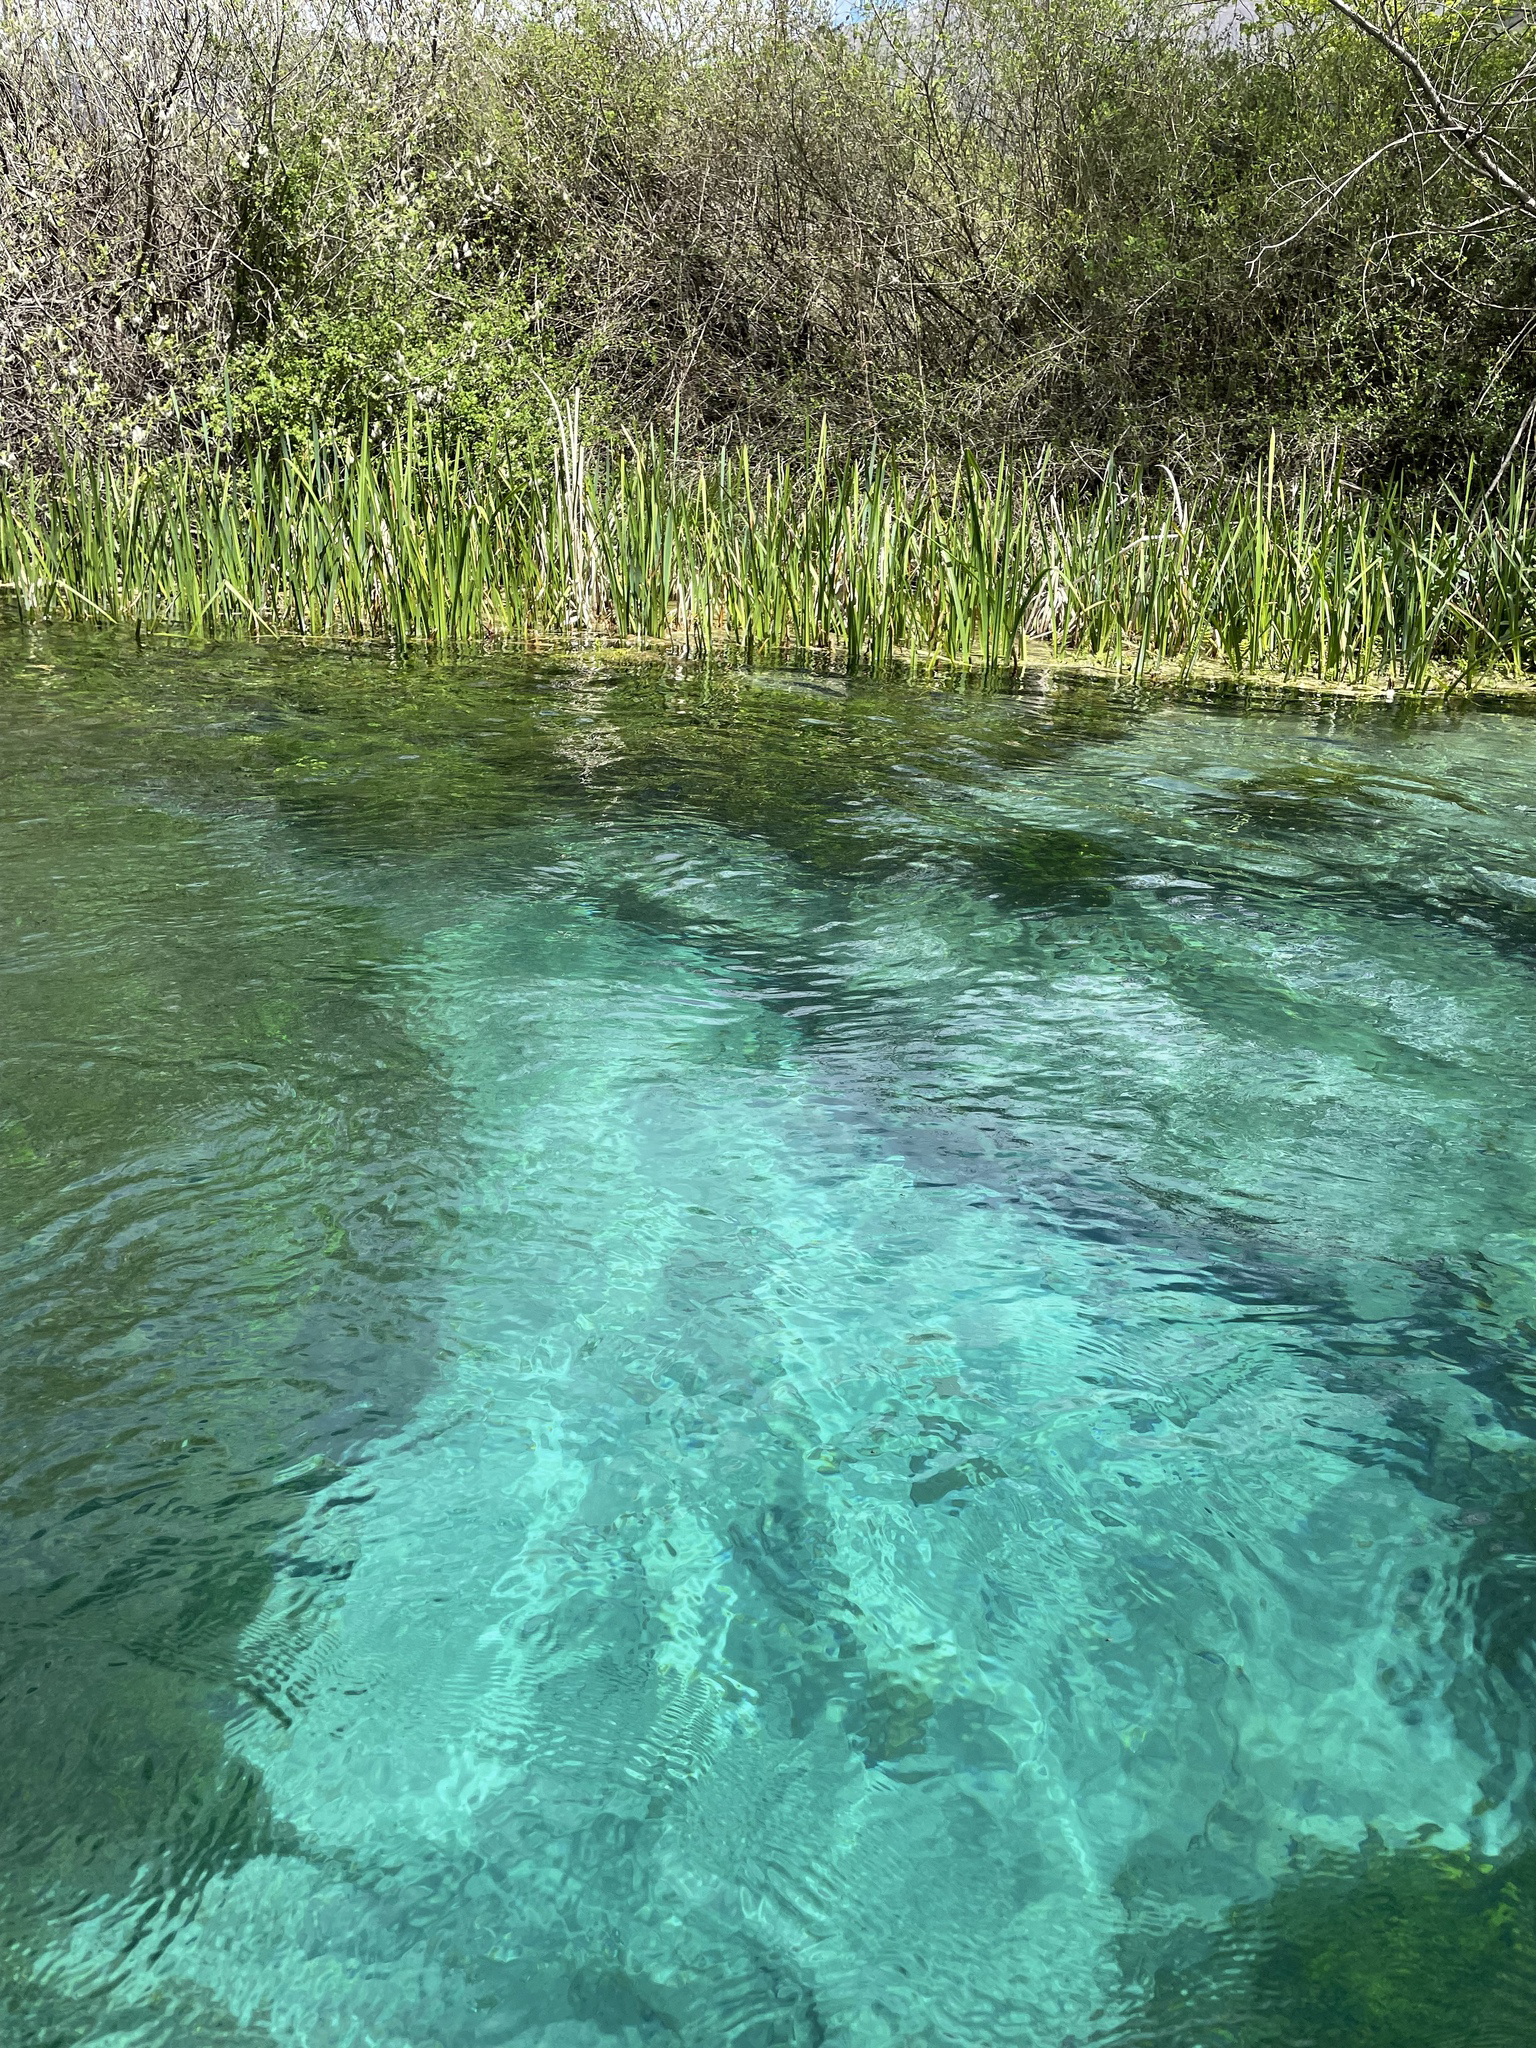 Canoa sul fiume Tirino il fiume più pulito d'Italia due giorni in abruzzo